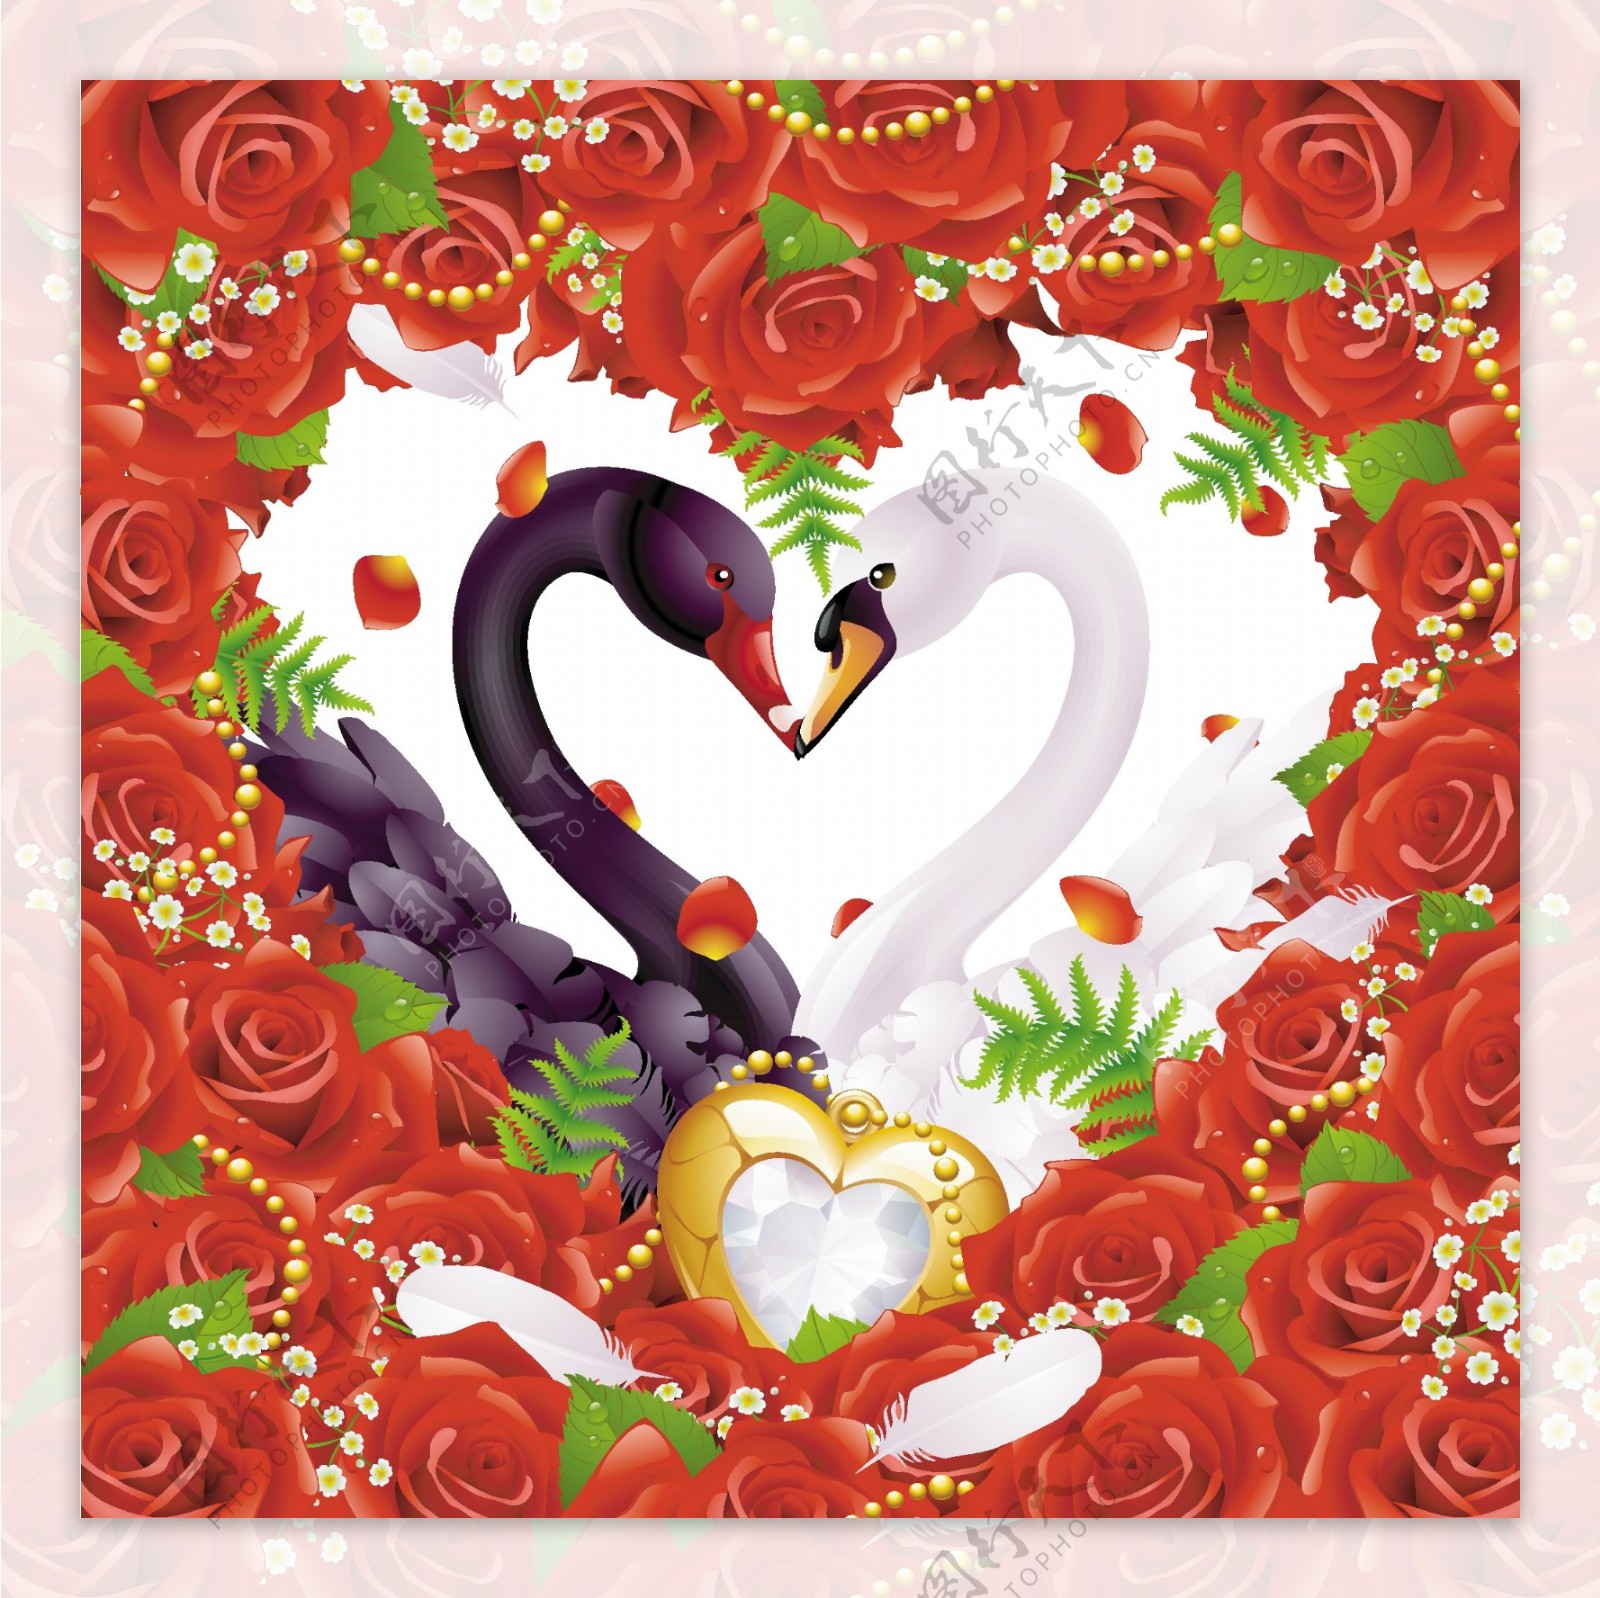 爱浪漫的玫瑰红天鹅主题矢量素材